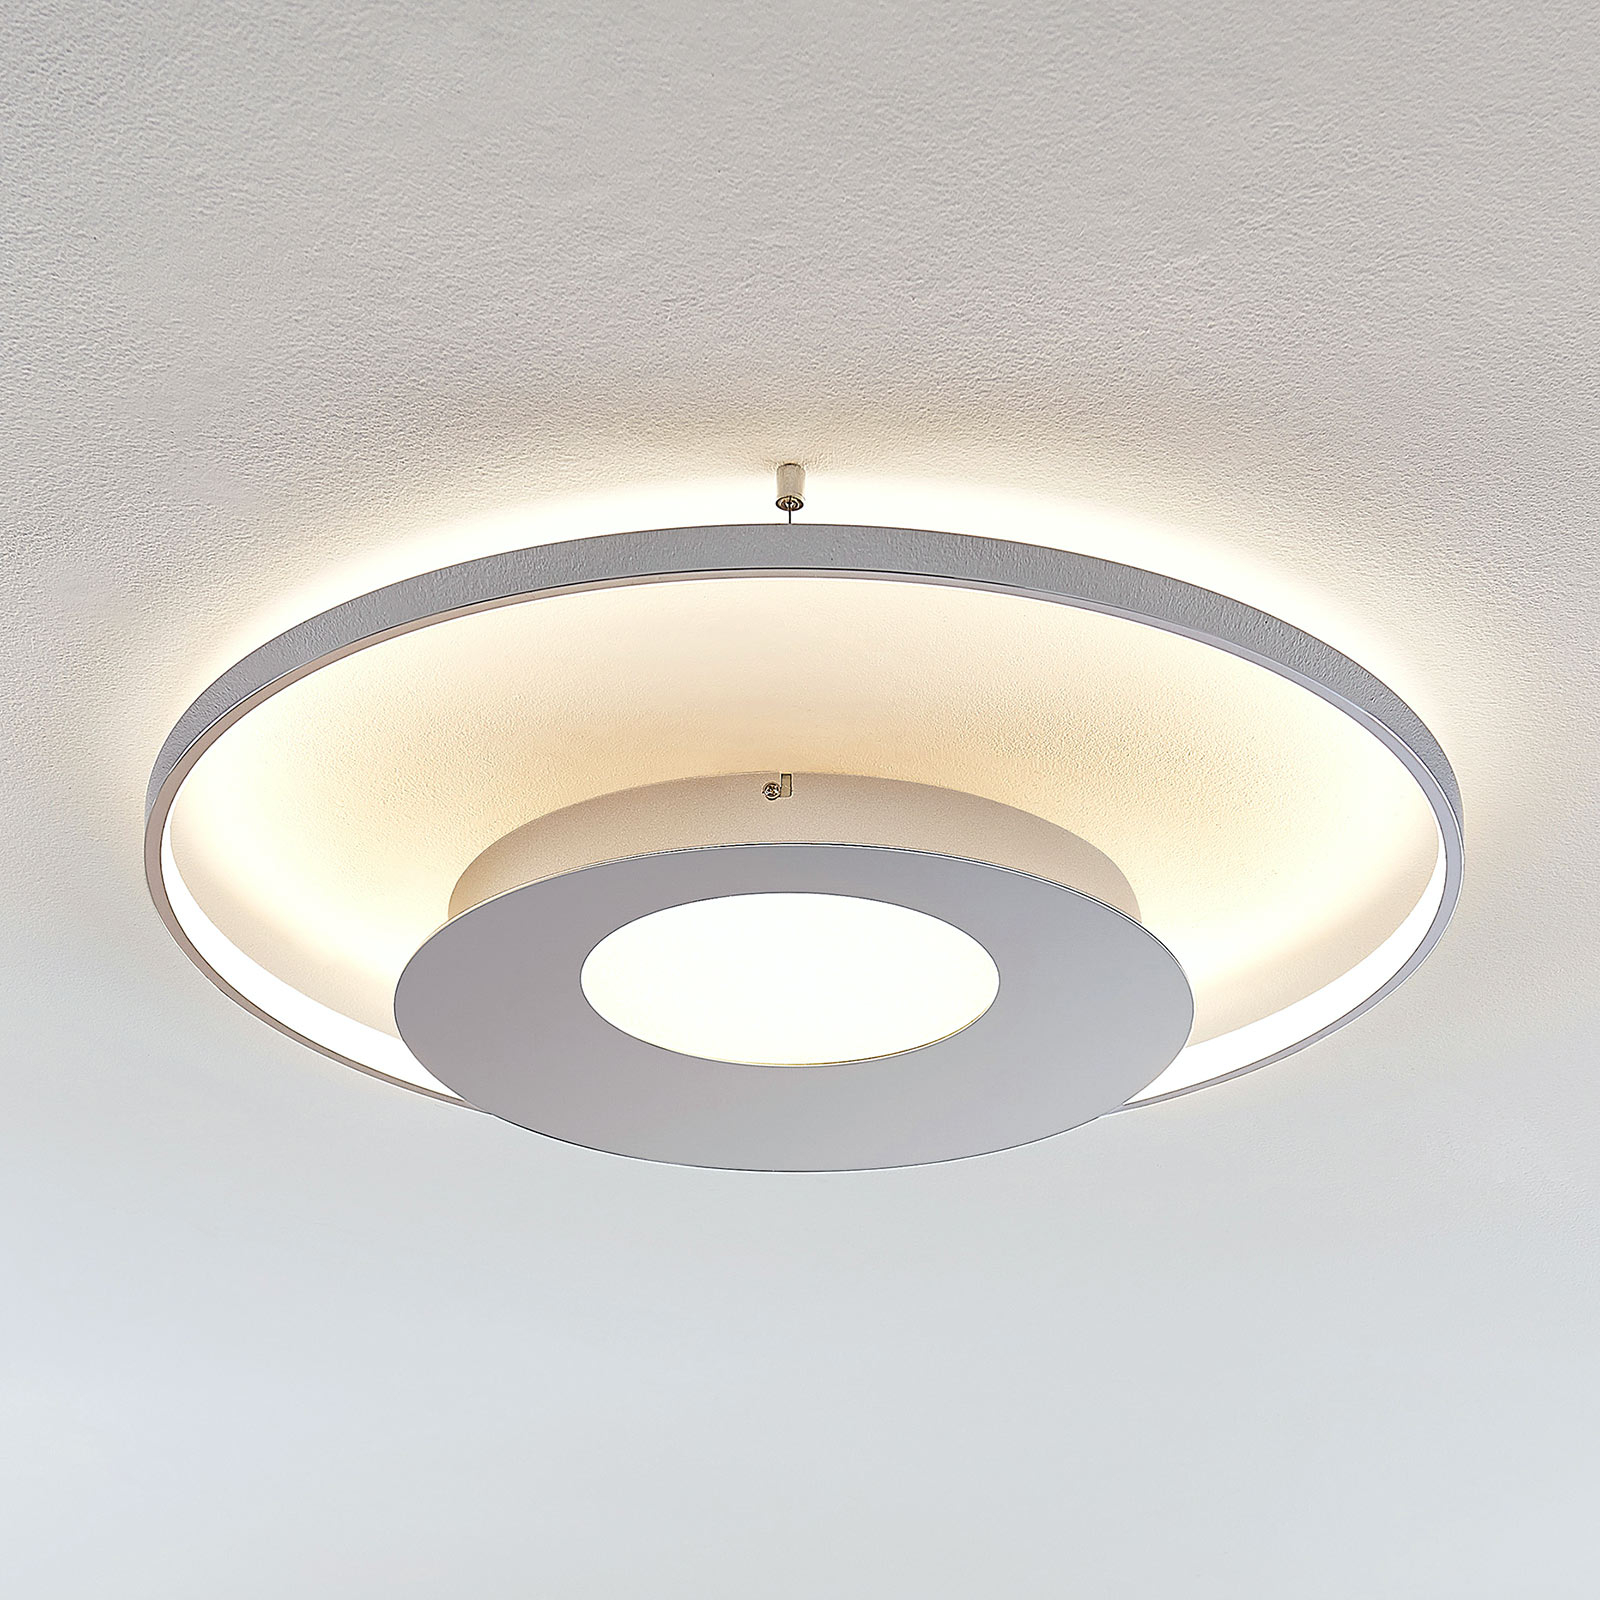 LED-taklampa Anays i polykarbonat, rund